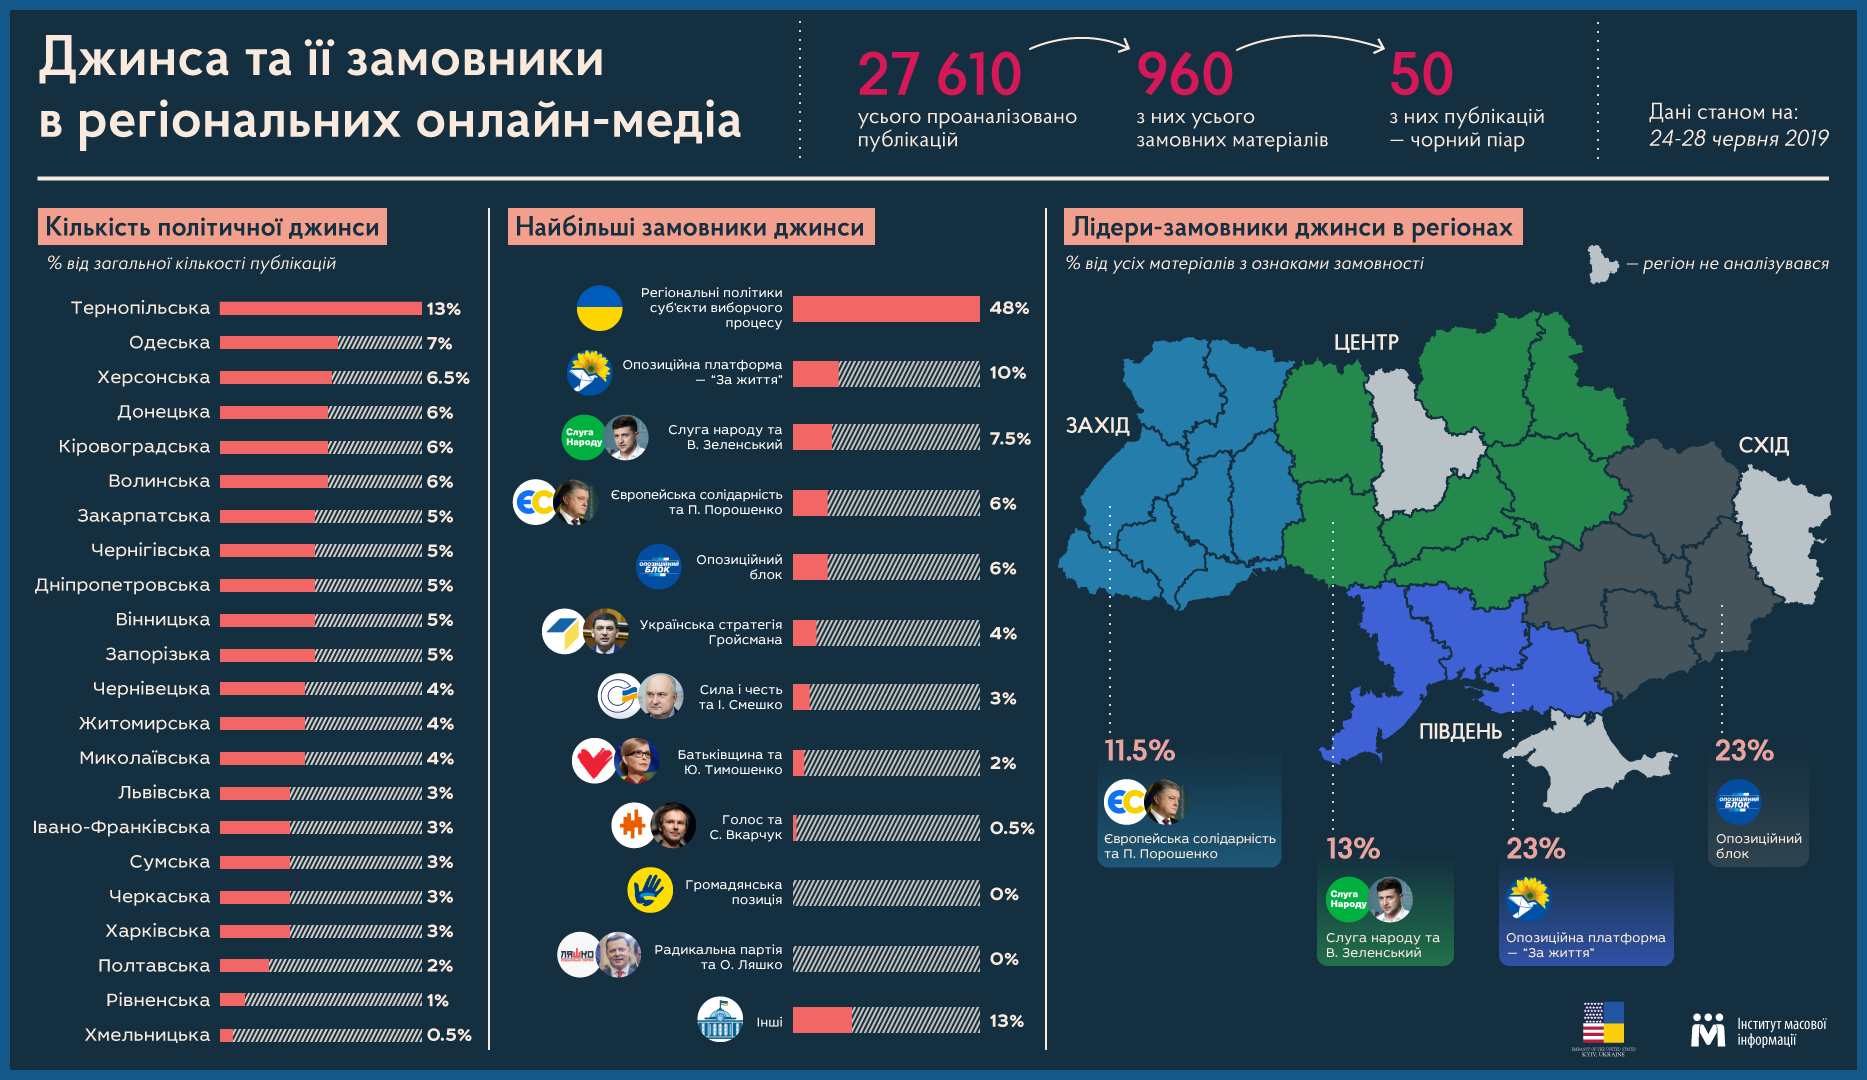 Оппоплатформа - лидер джинсы в онлайн-СМИ регионов: инфографика